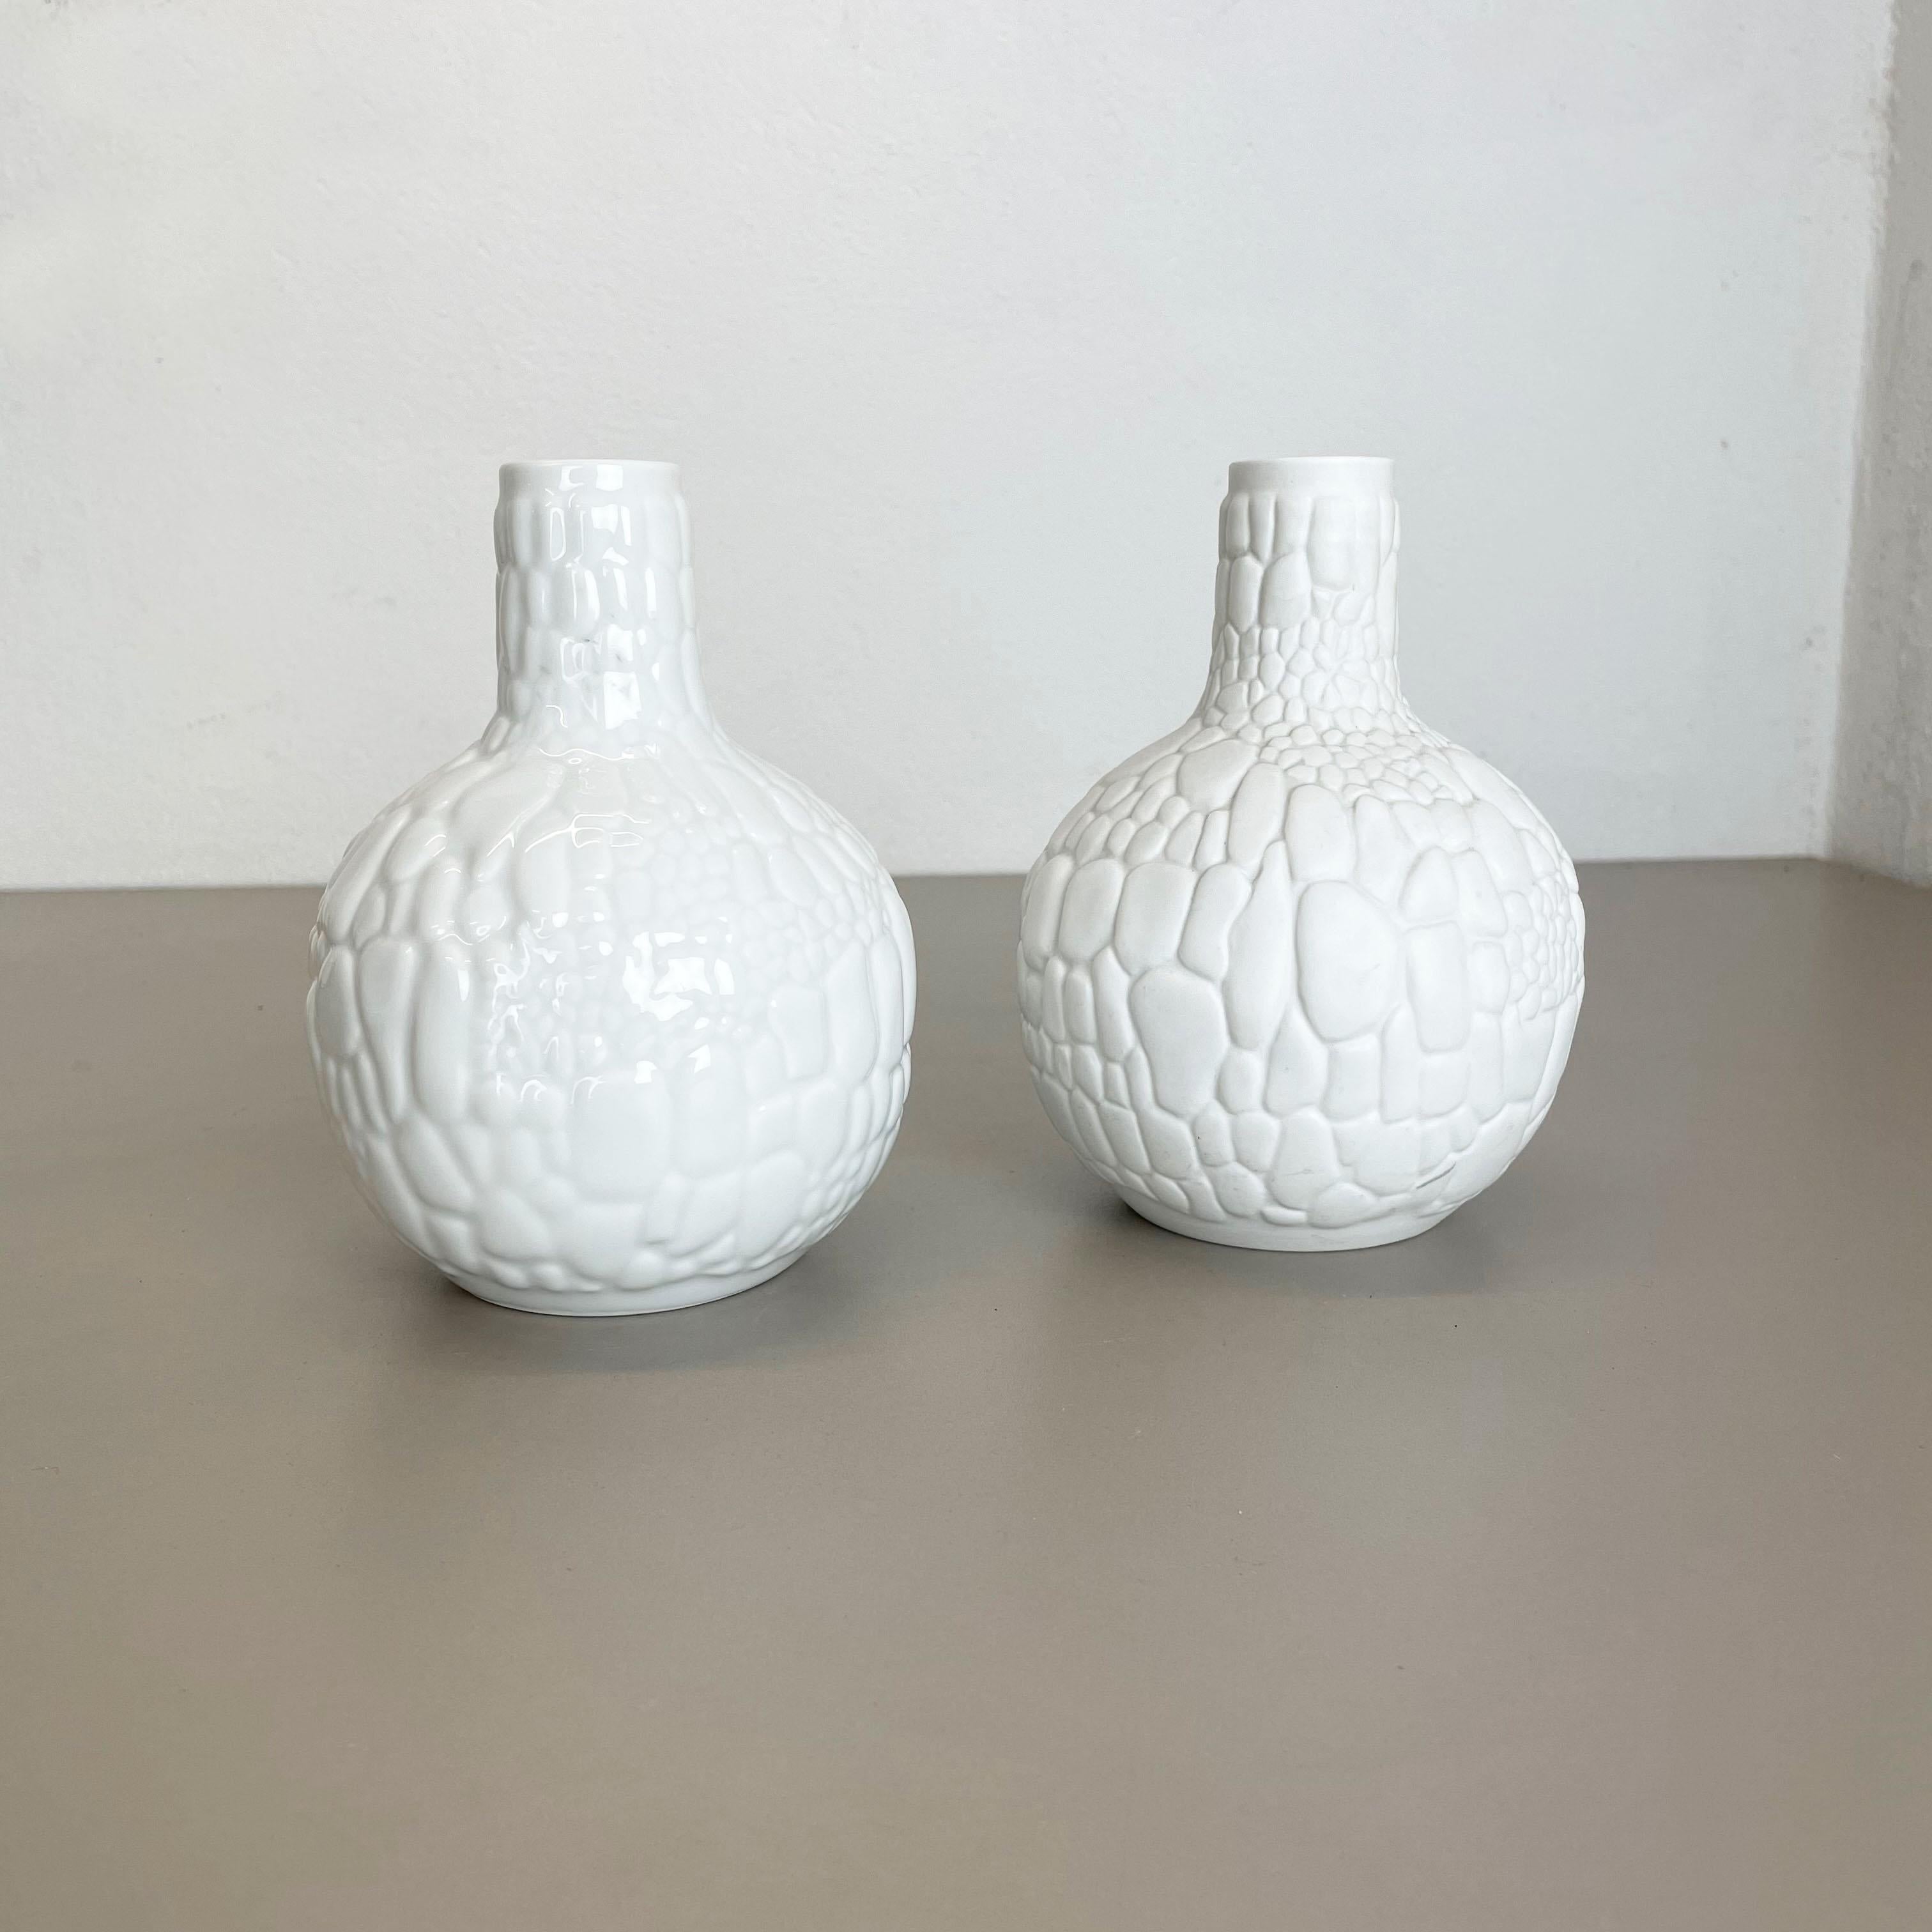 Article :

Op Art vase en porcelaine set de 2


Producteur :

AK Kaiser, Allemagne


Description :

Ce vase vintage original OP Art a été produit dans les années 1970 en Allemagne. il est en porcelaine avec une surface optique OP Art